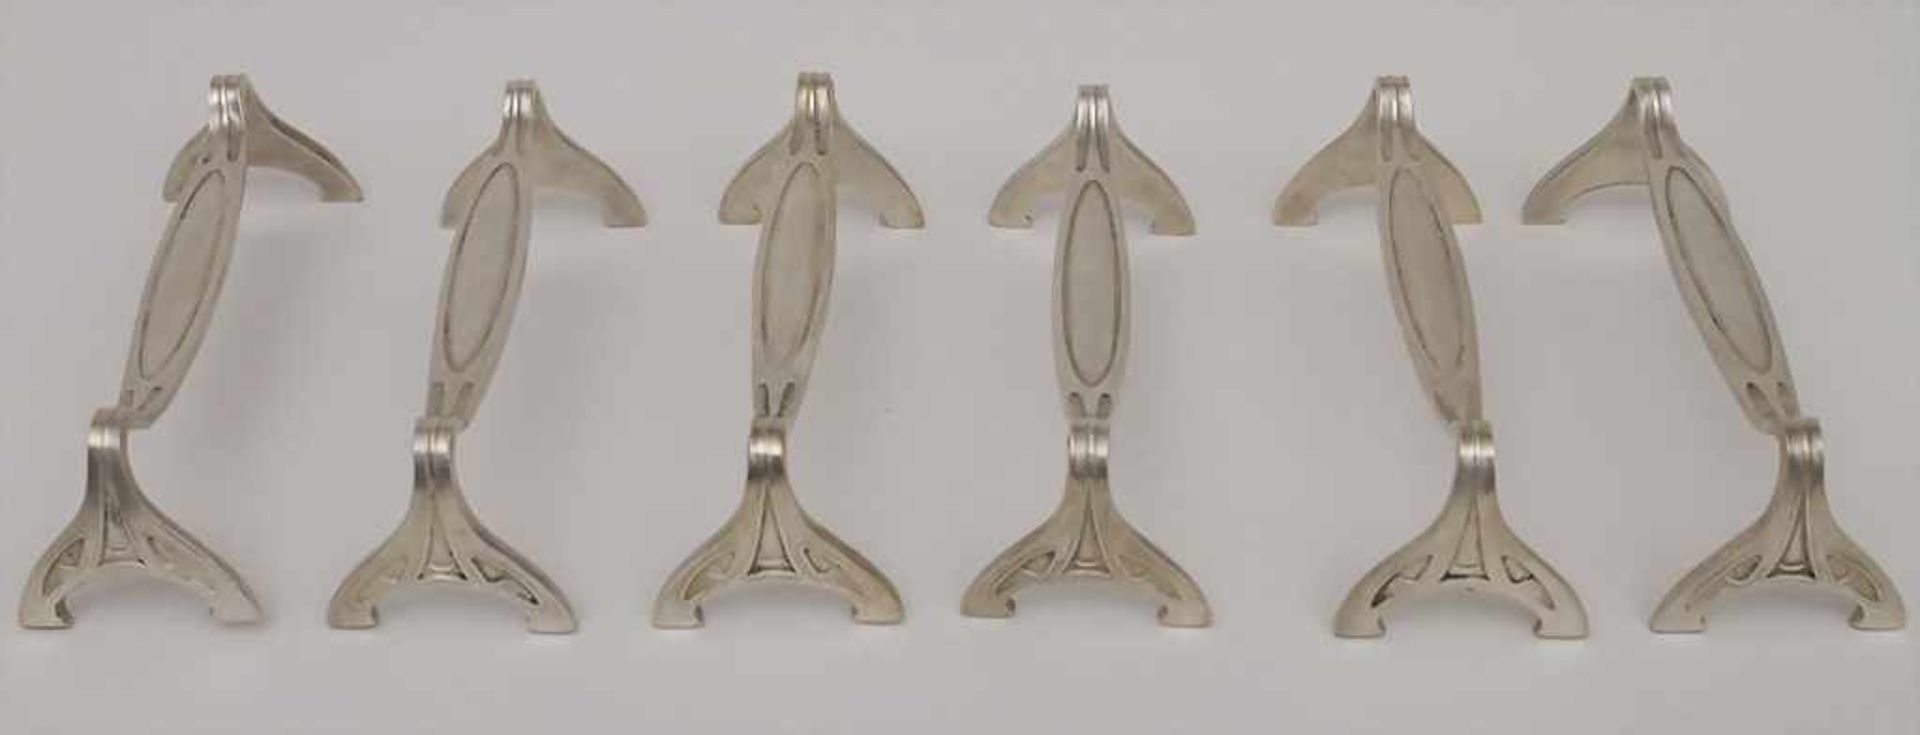 6 Jugendstil Messerbänke / 6 Art Nouveau knife rests, deutsch, um 1900Material: Metall, versilbert,